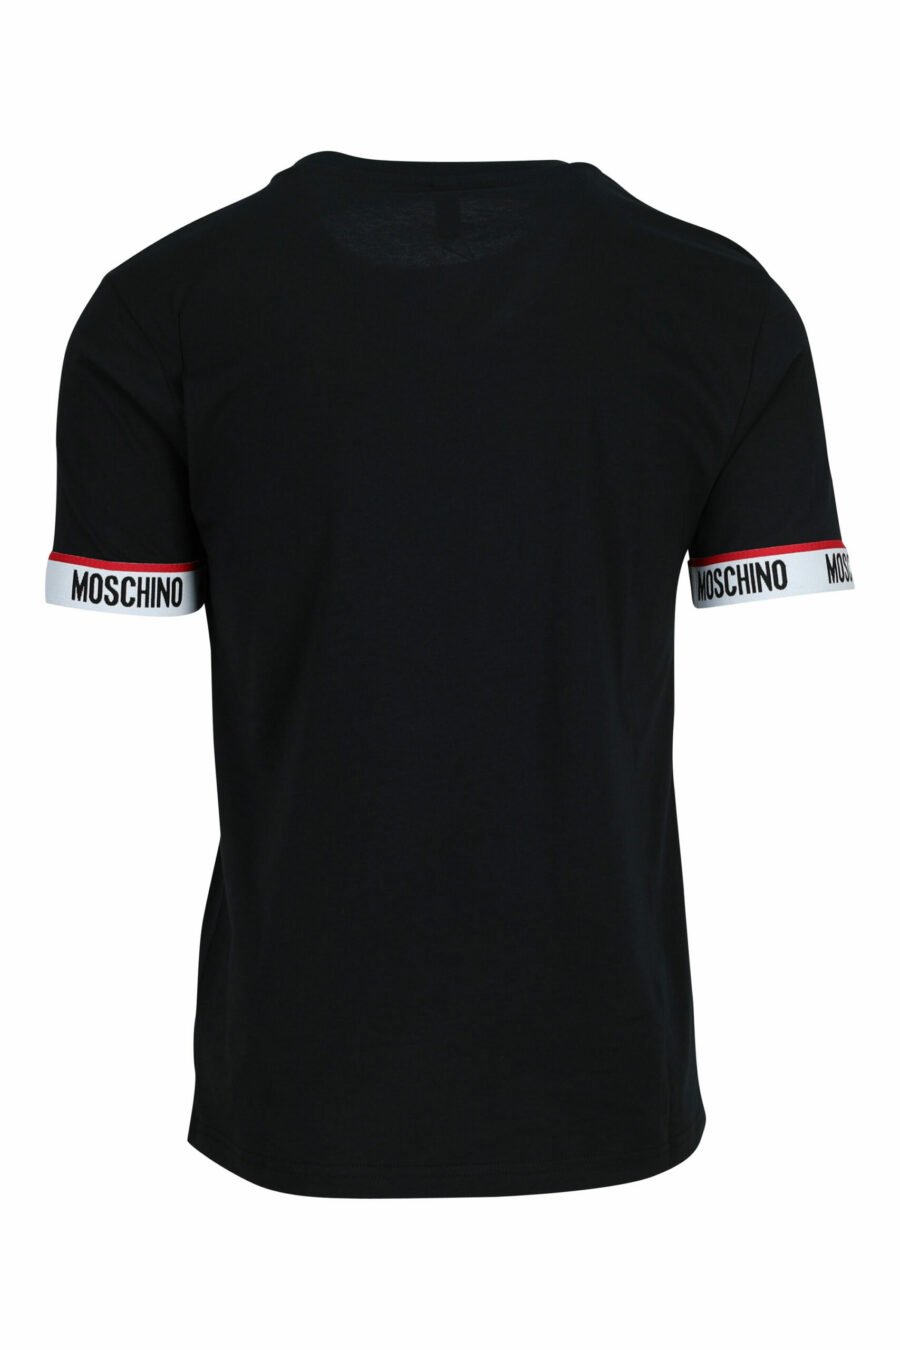 T-shirt noir avec logo blanc sur les manches - 667113604855 1 à l'échelle